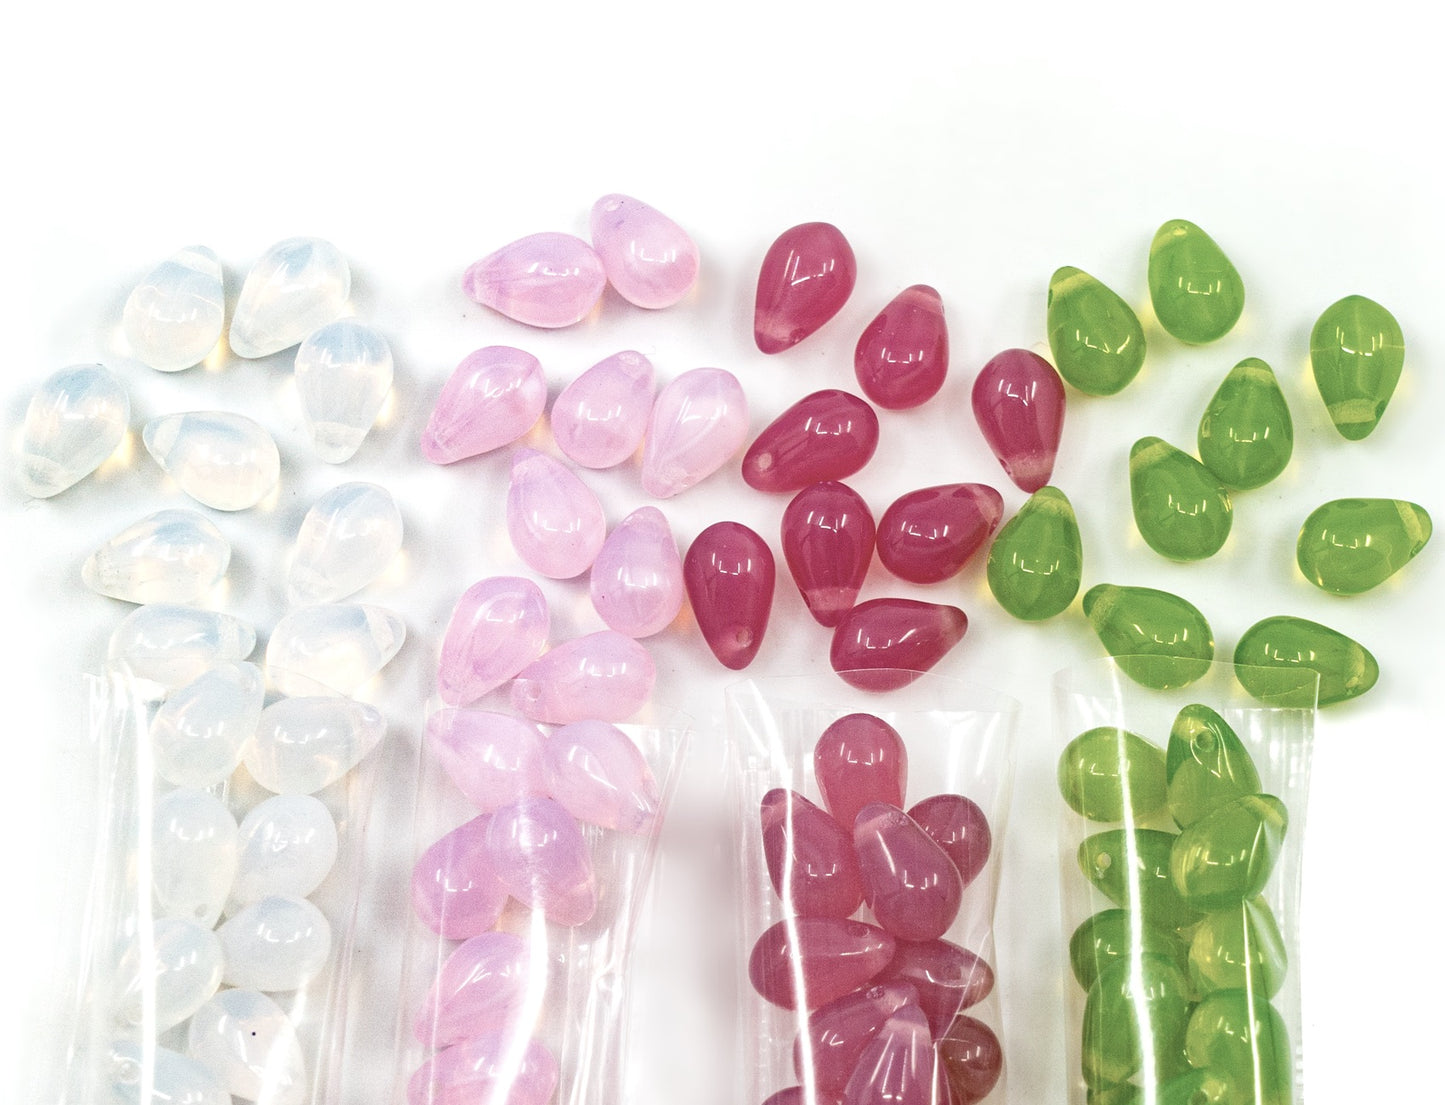 120 多个 6x9 毫米吊坠珠子套件 - 用于珠宝制作的泪珠玻璃珠套装，有 4 种蛋白石颜色：白色、粉色、深粉色、草绿色